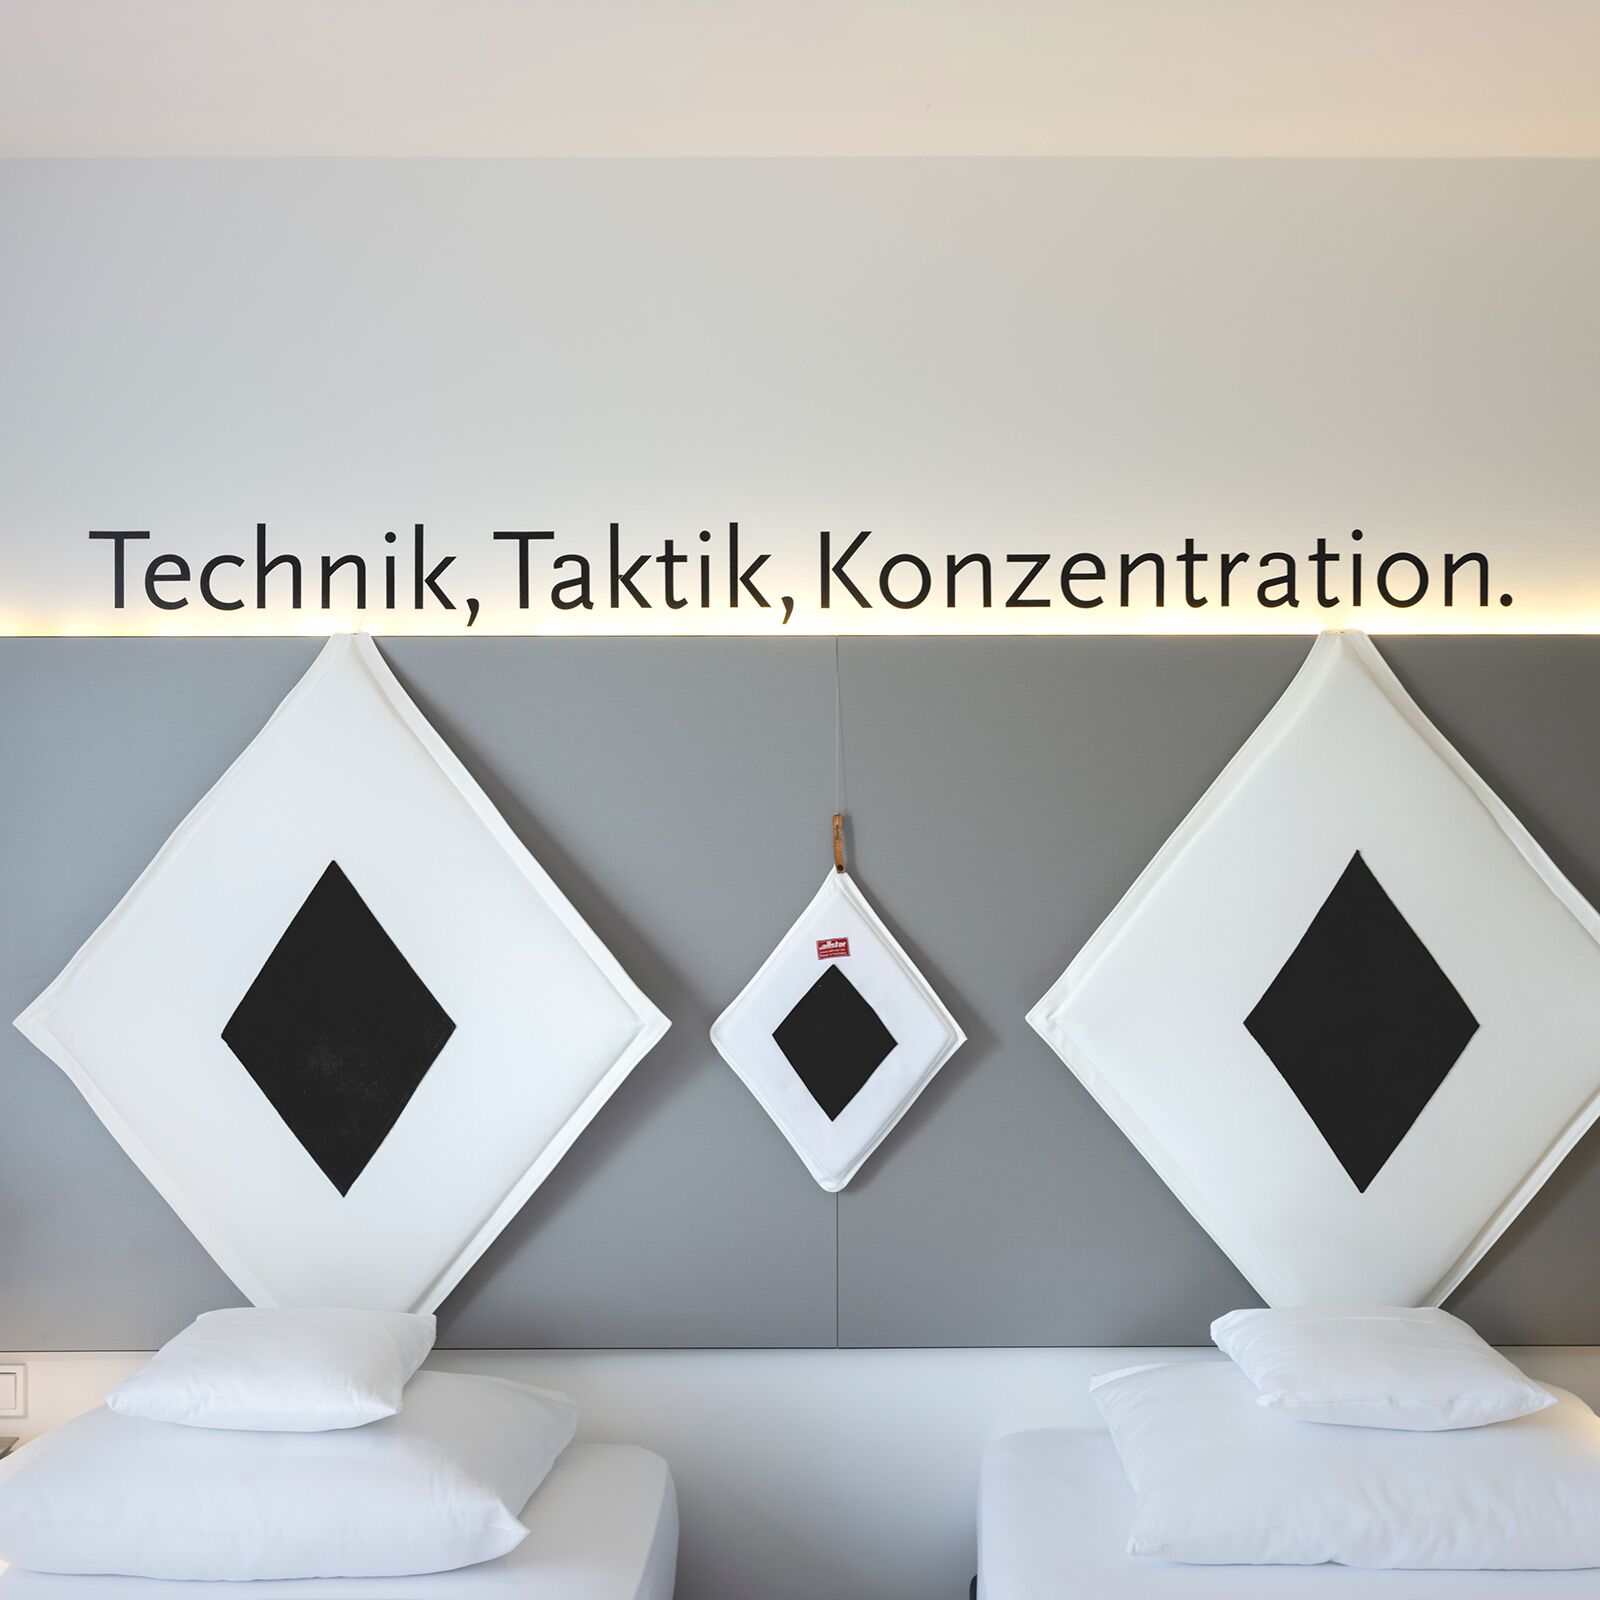 Details Glockenspitze Hotelbetriebsgesellschaft GmbH